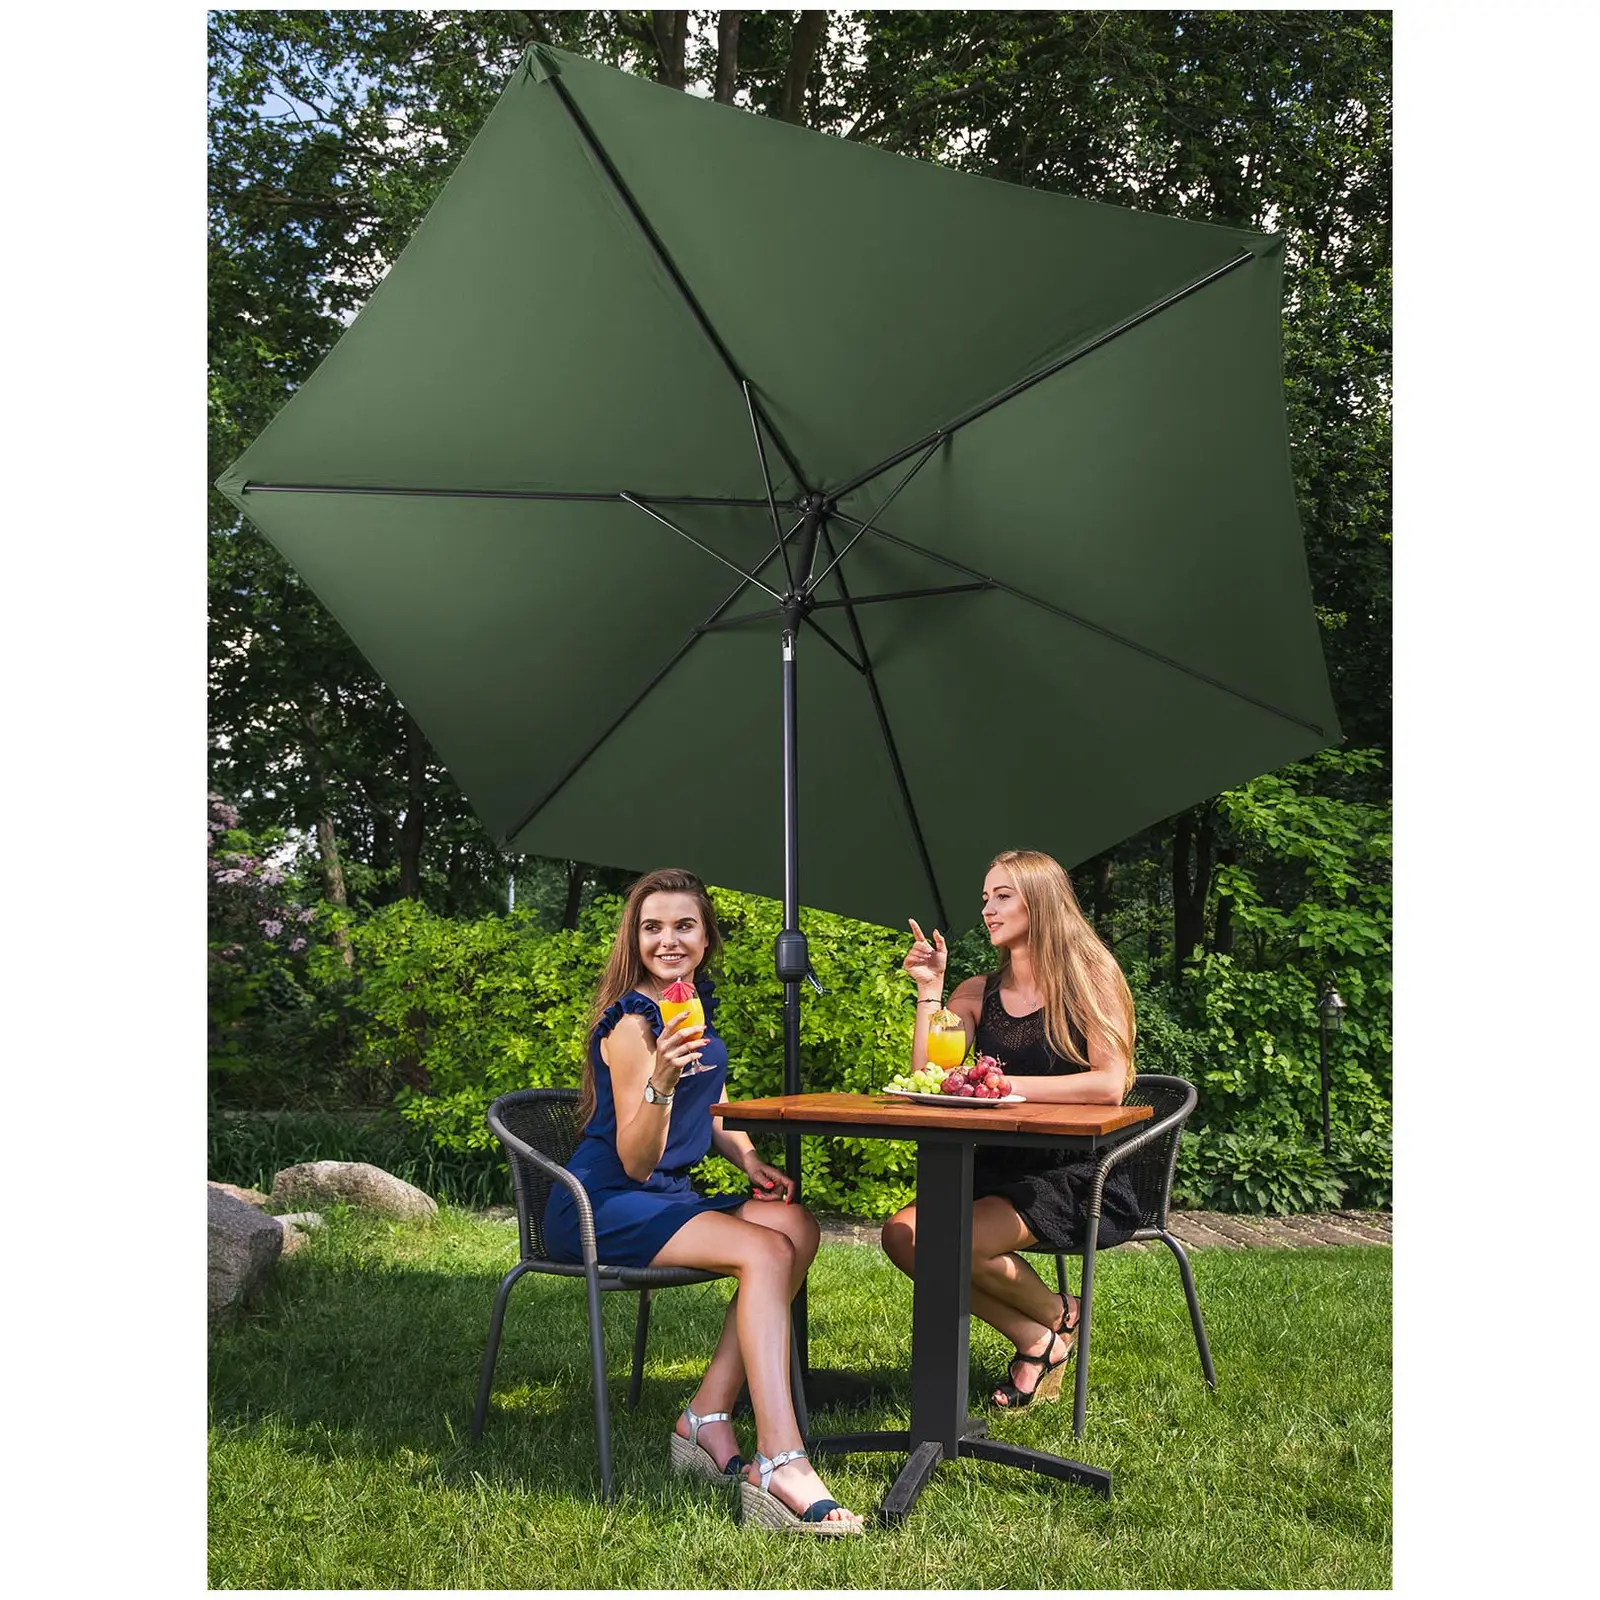 Outdoor Umbrella - green - hexagonal - Ø 300 cm - tiltable